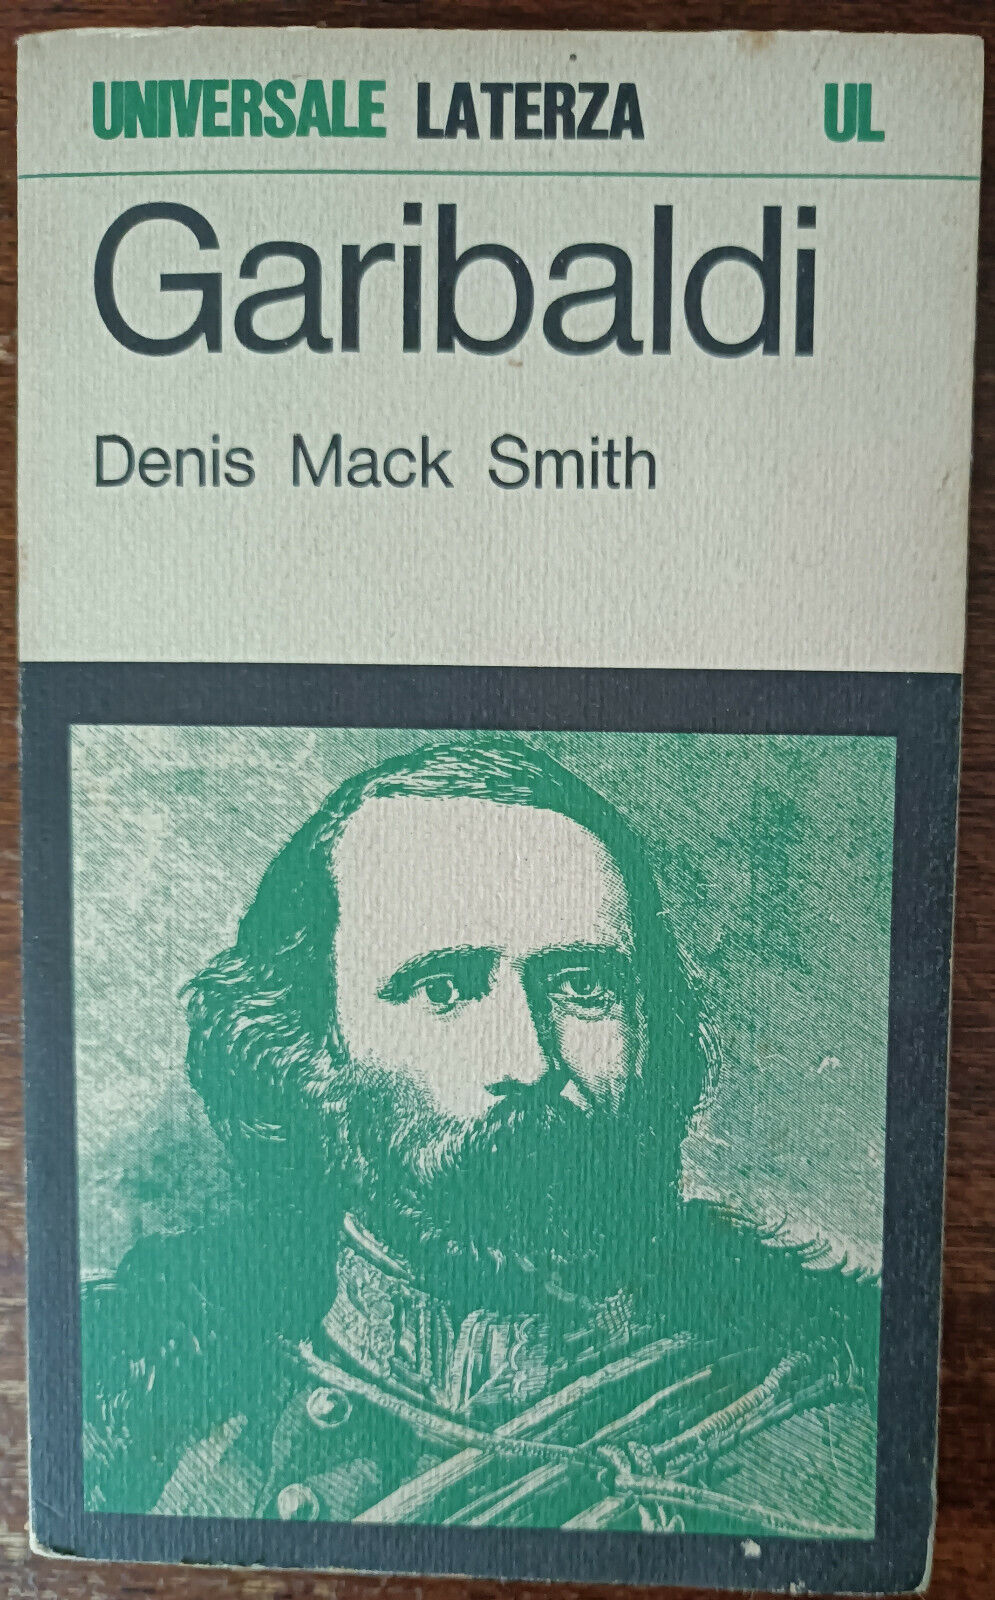 Garibaldi - Denis Mack Smith - Laterza, 1970 - A